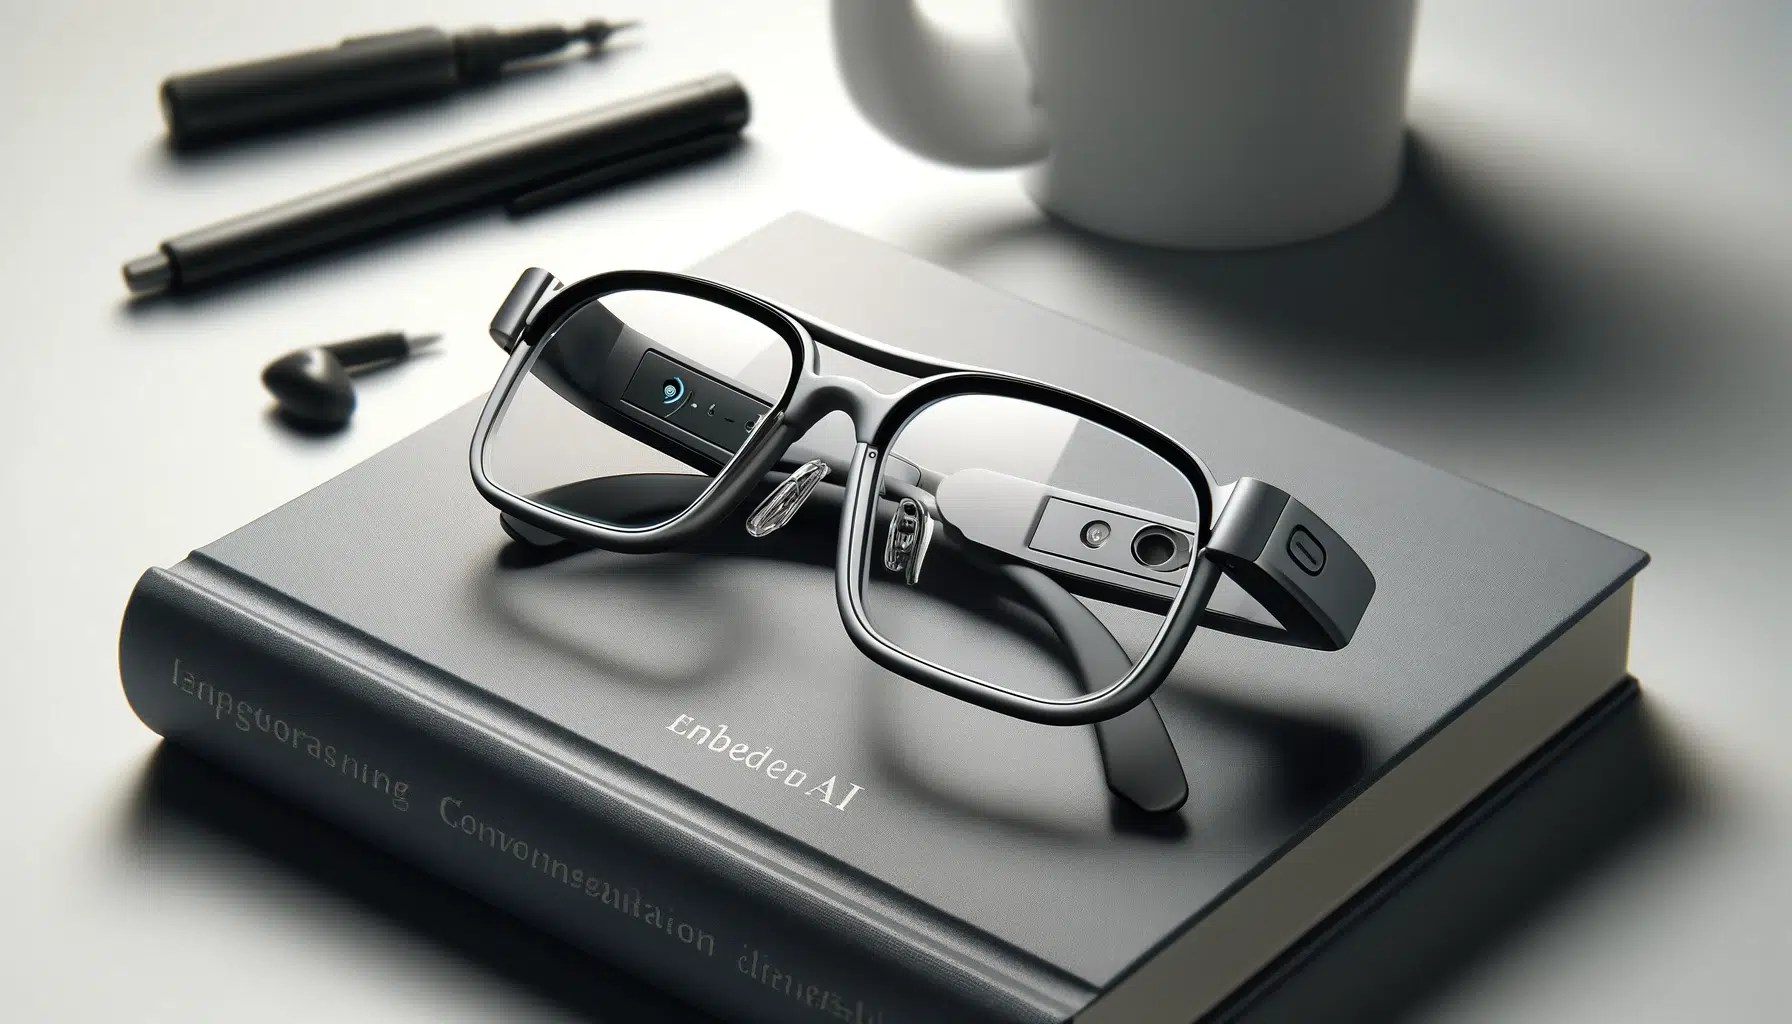 Des lunettes intelligentes reposent sur un livre intitulé "embedded AI", à côté d'une tasse et de stylos sur une surface éclairée de manière subtile.